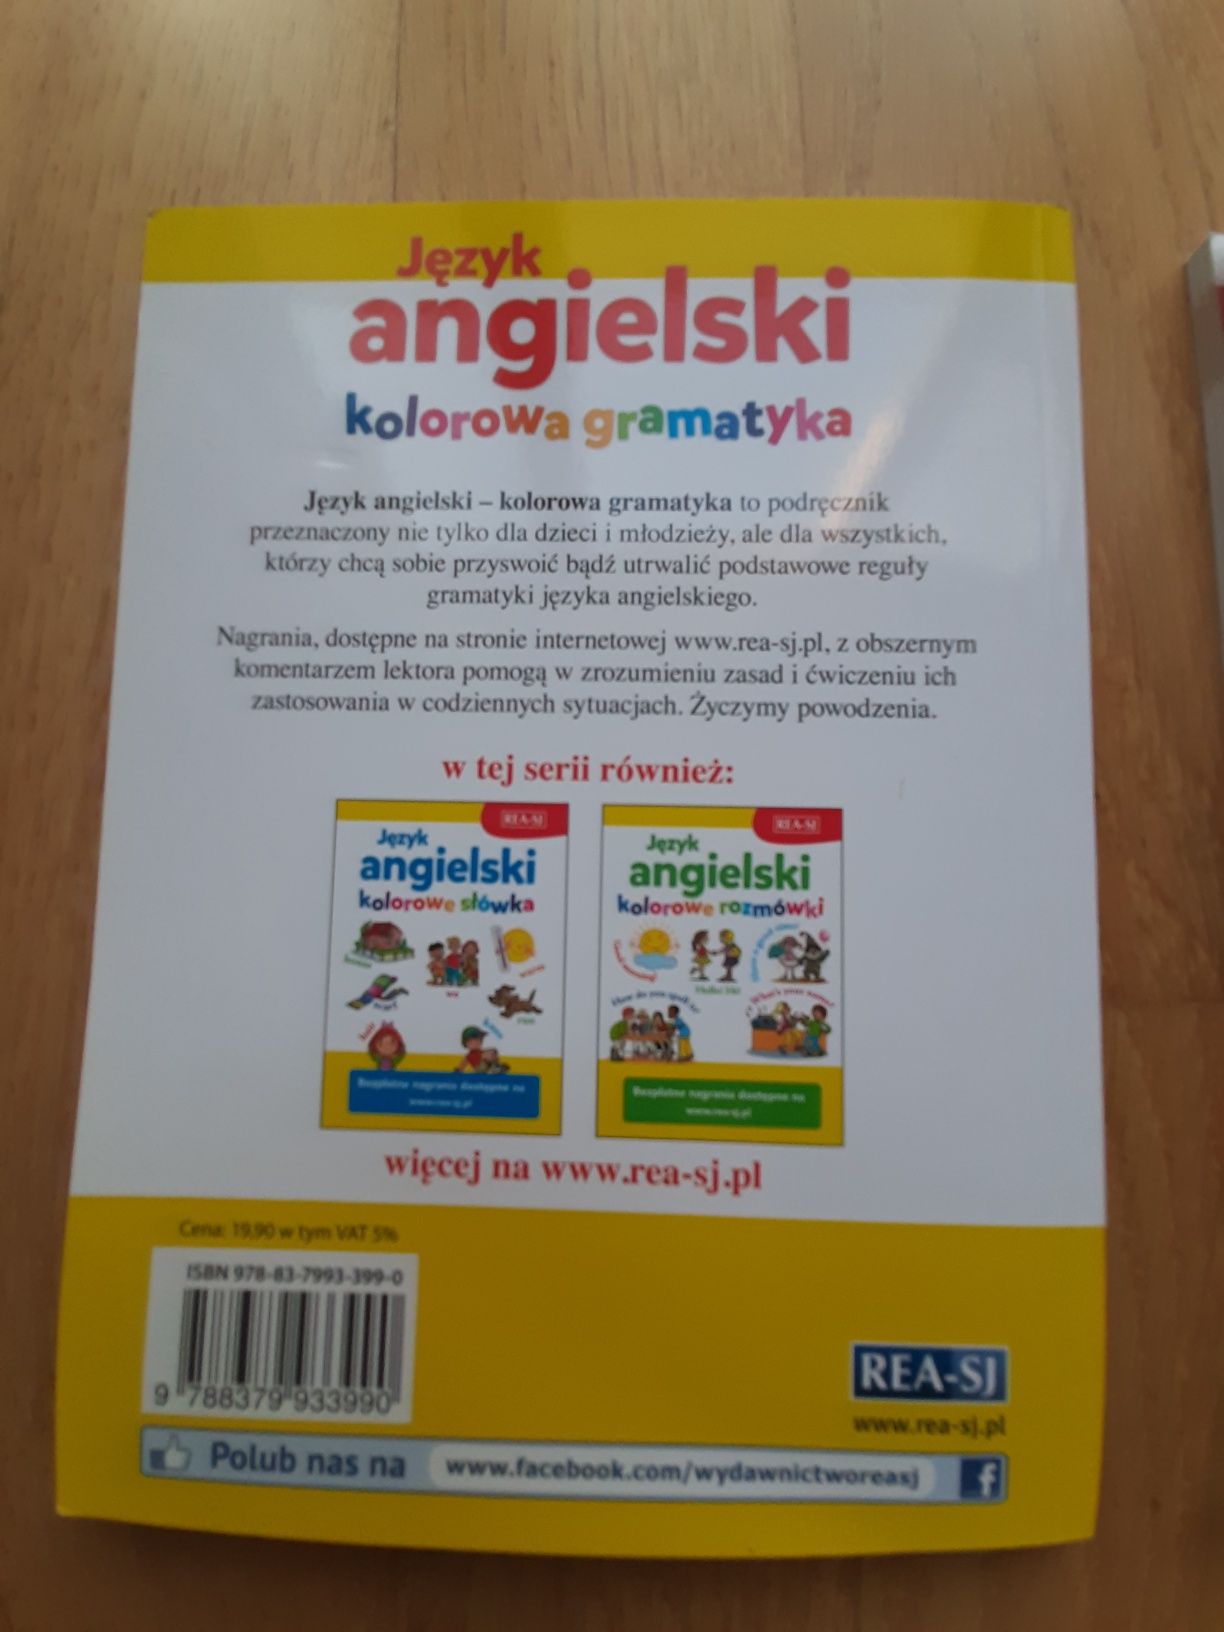 Język angielski dla dzieci cał. 22 zł (LSDP7)